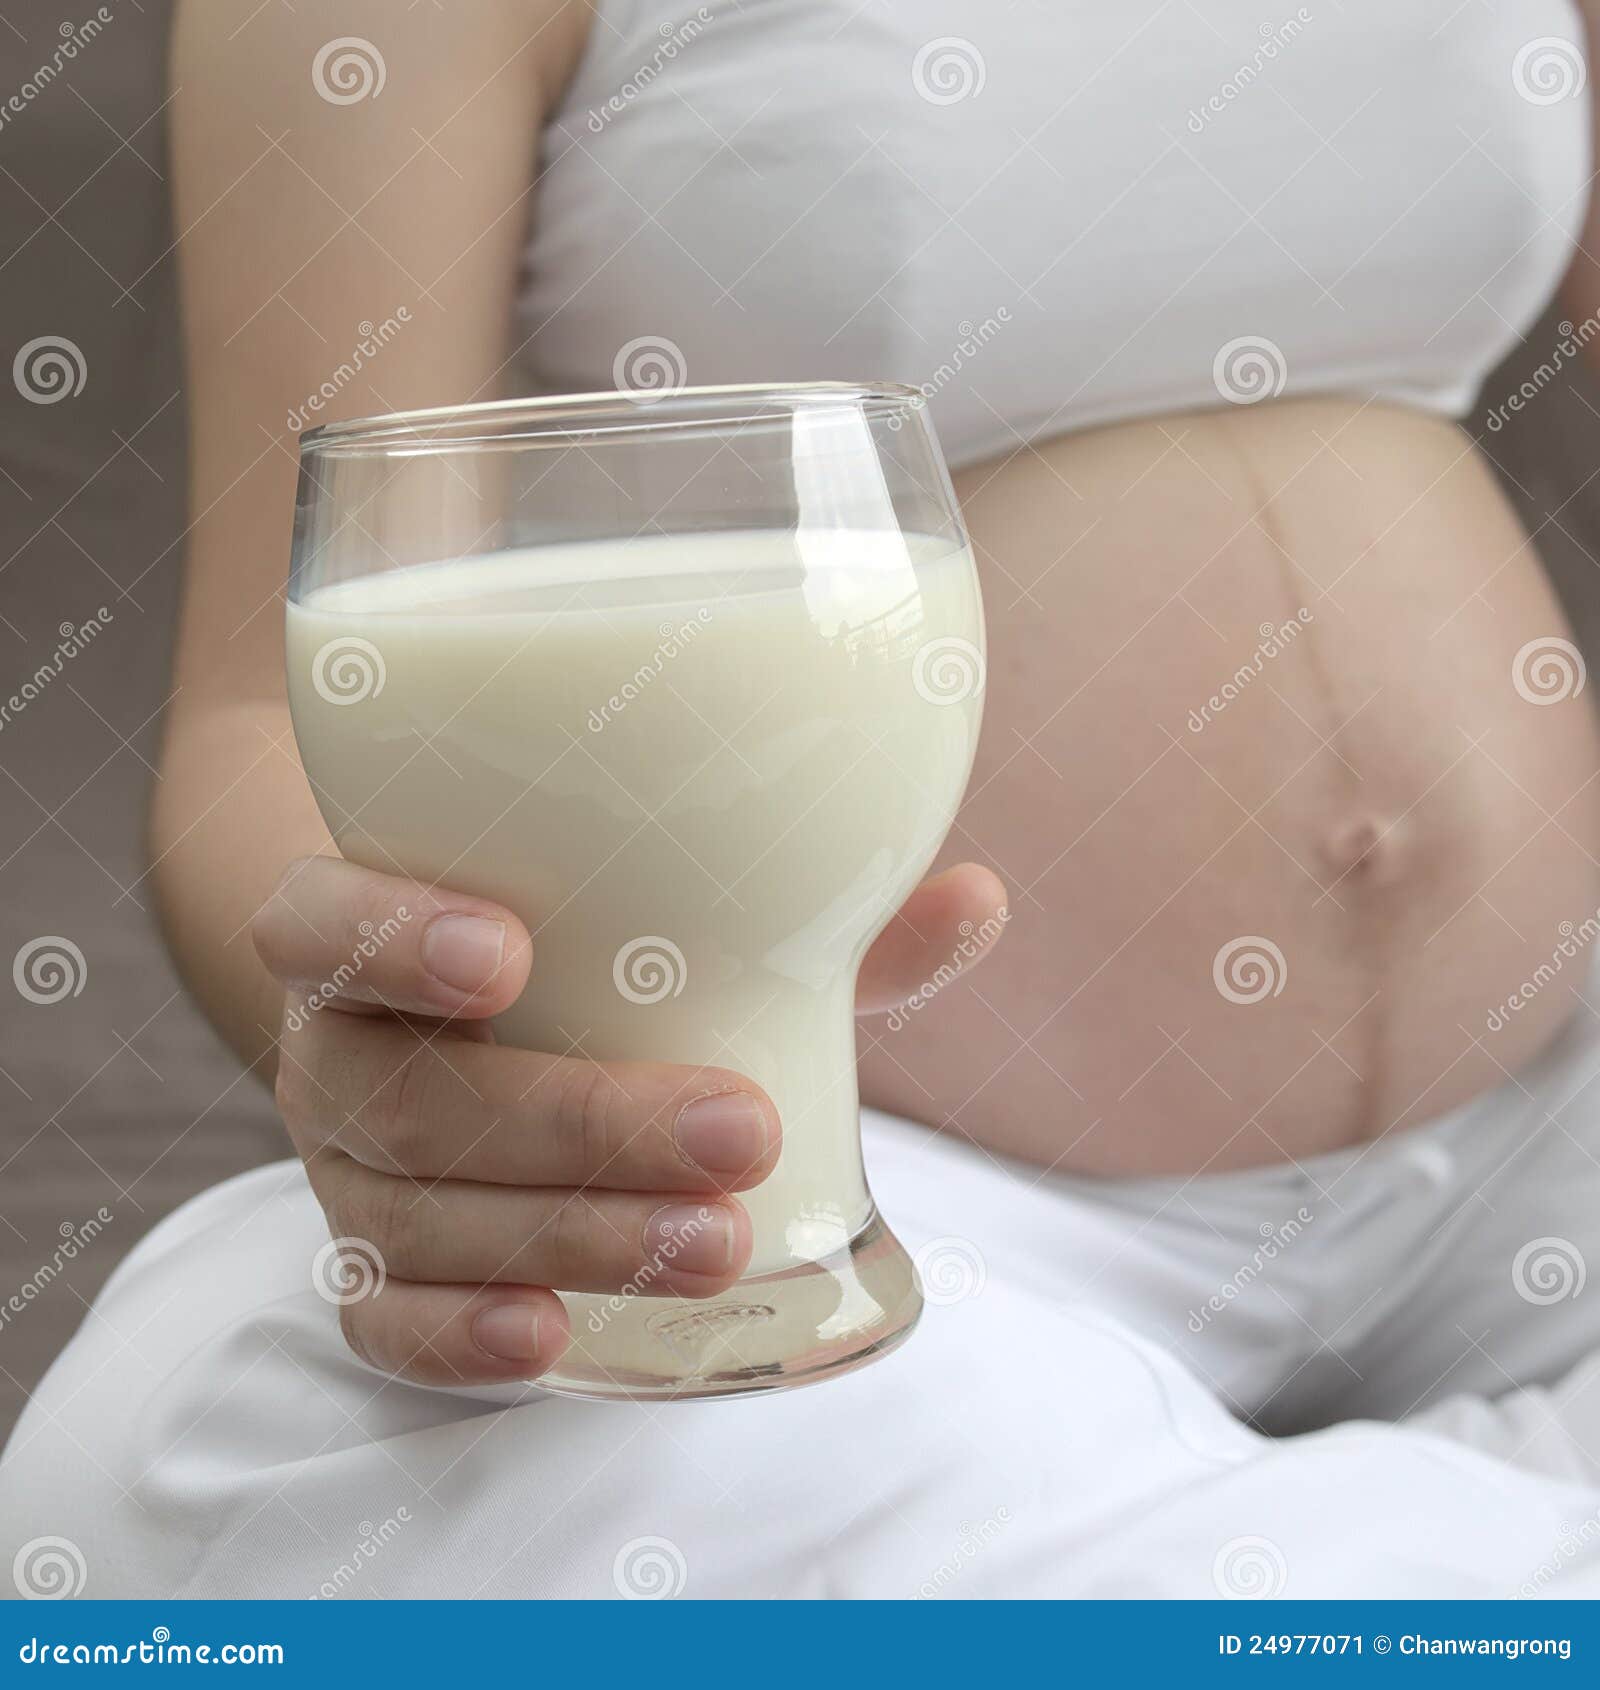 может ли при беременности из груди выделятся молоко фото 1